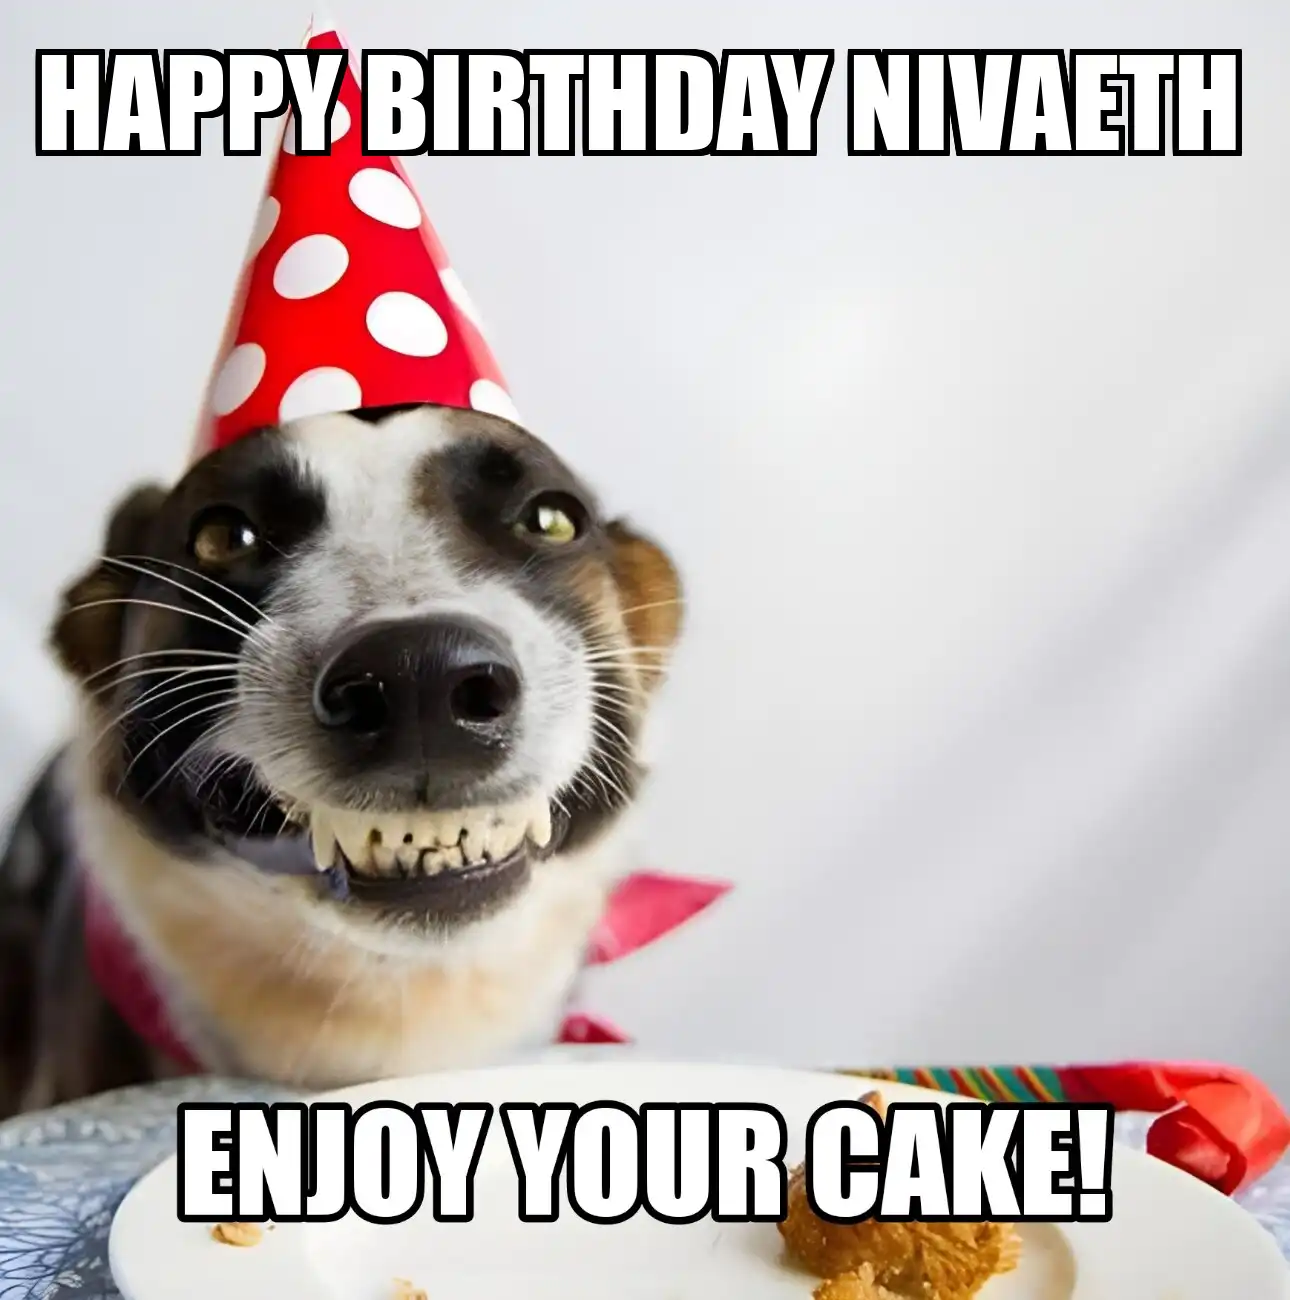 Happy Birthday Nivaeth Enjoy Your Cake Dog Meme